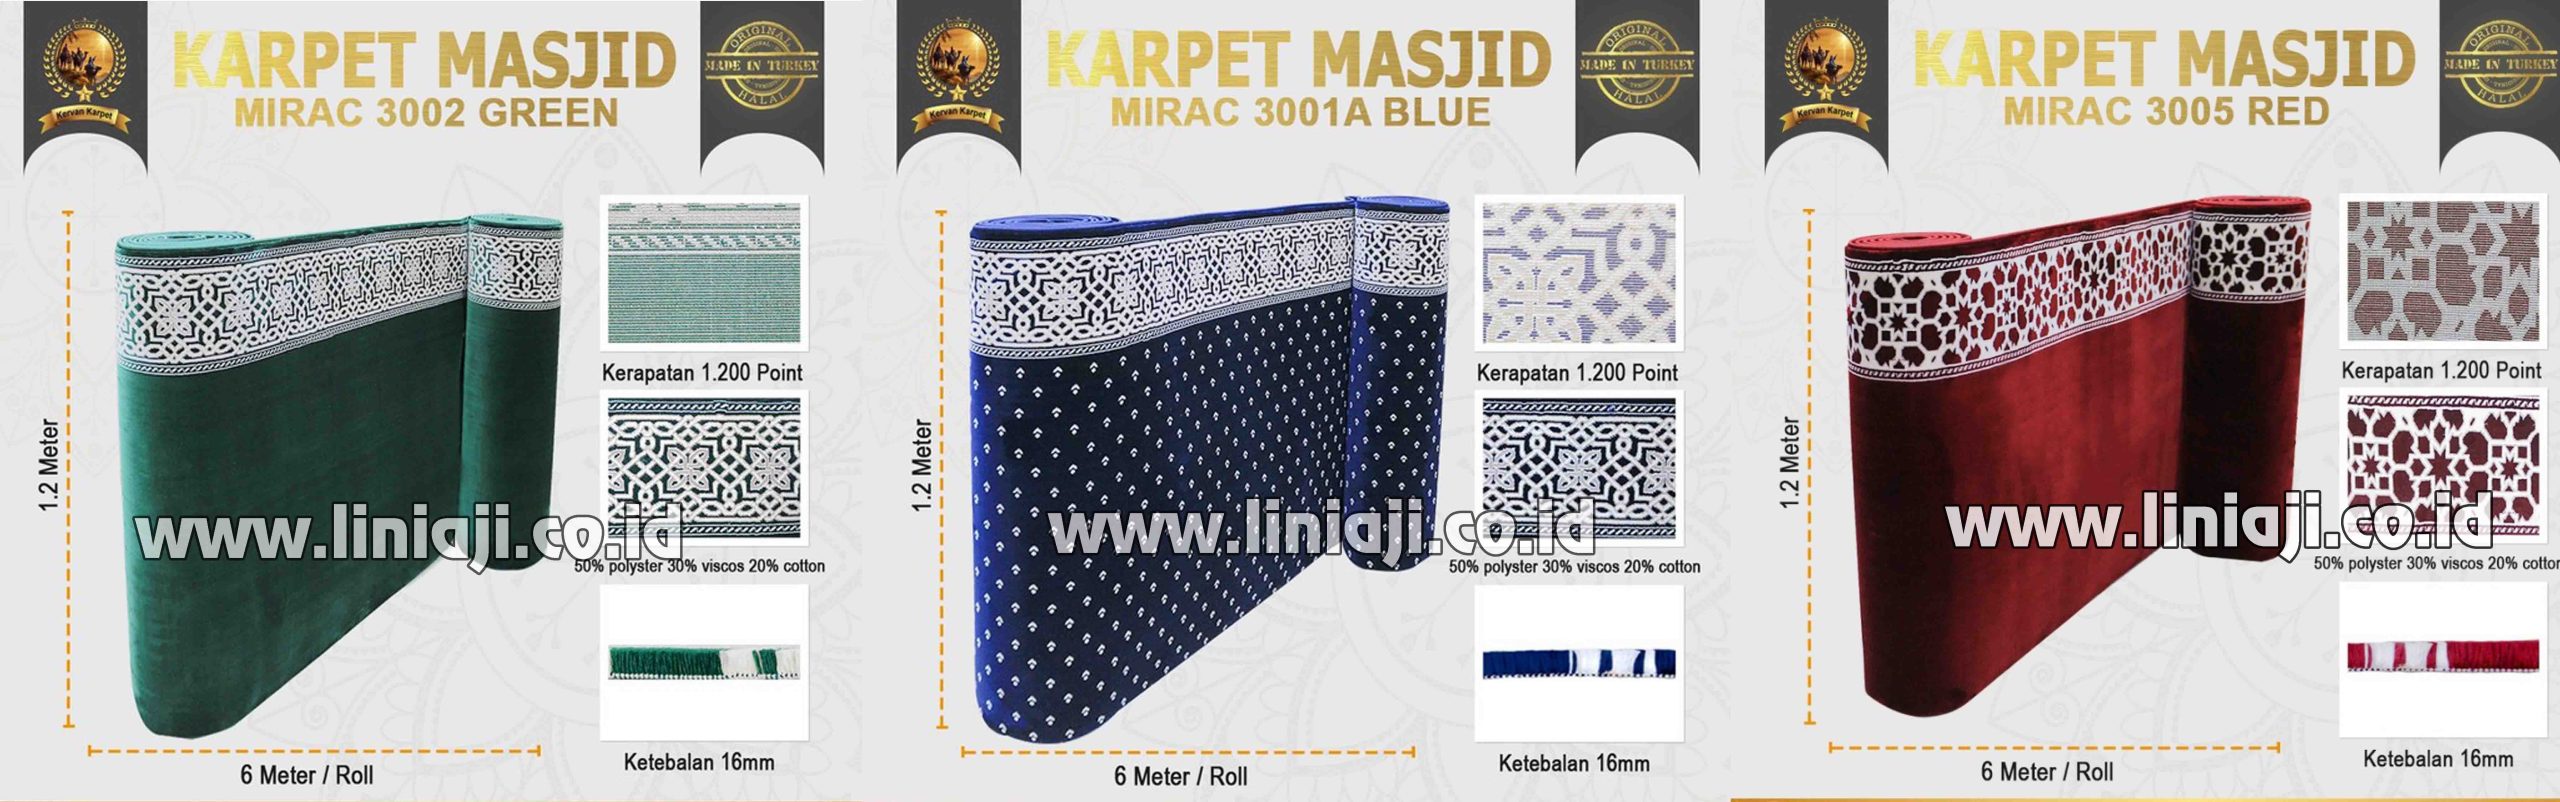 Jual Karpet Masjid Mirac